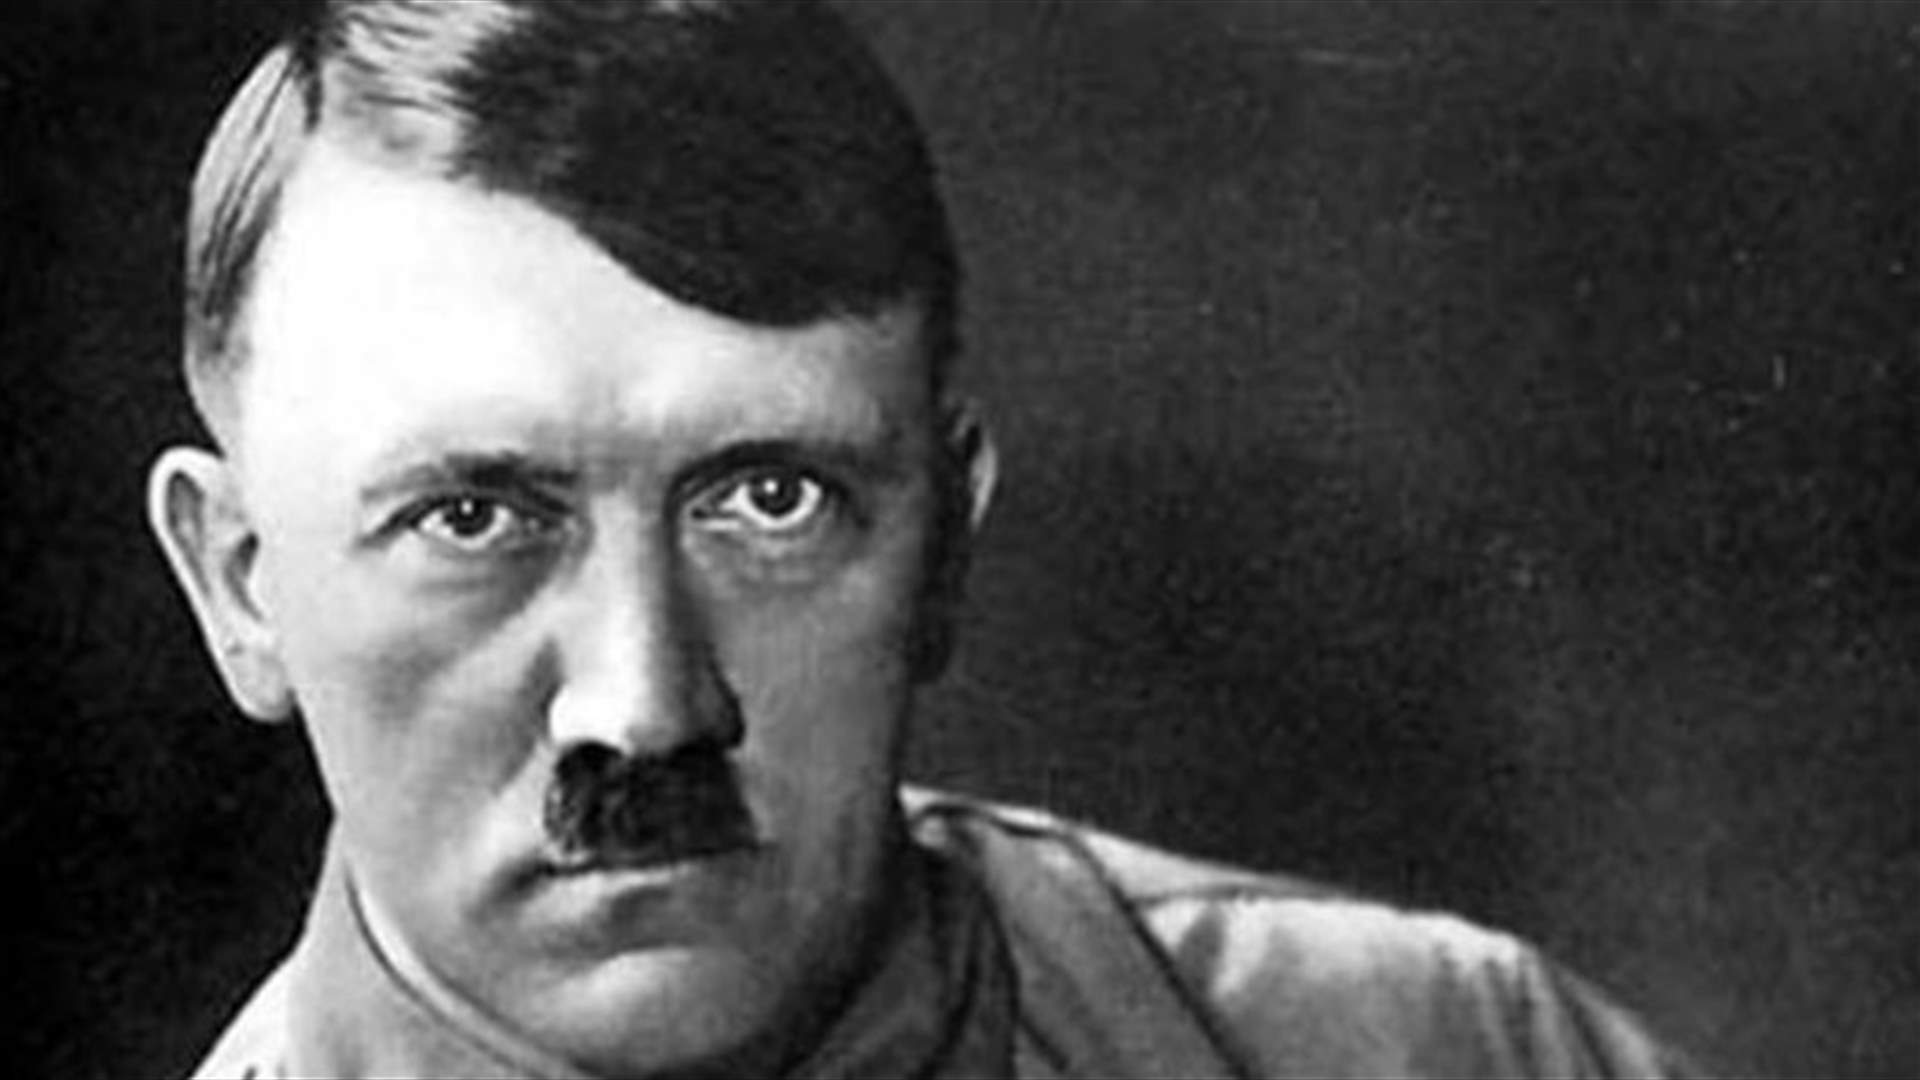 علامة تجارية رياضية شهيرة تثير الجدل بحذاء يُشبه وجه أدولف هتلر (صور)